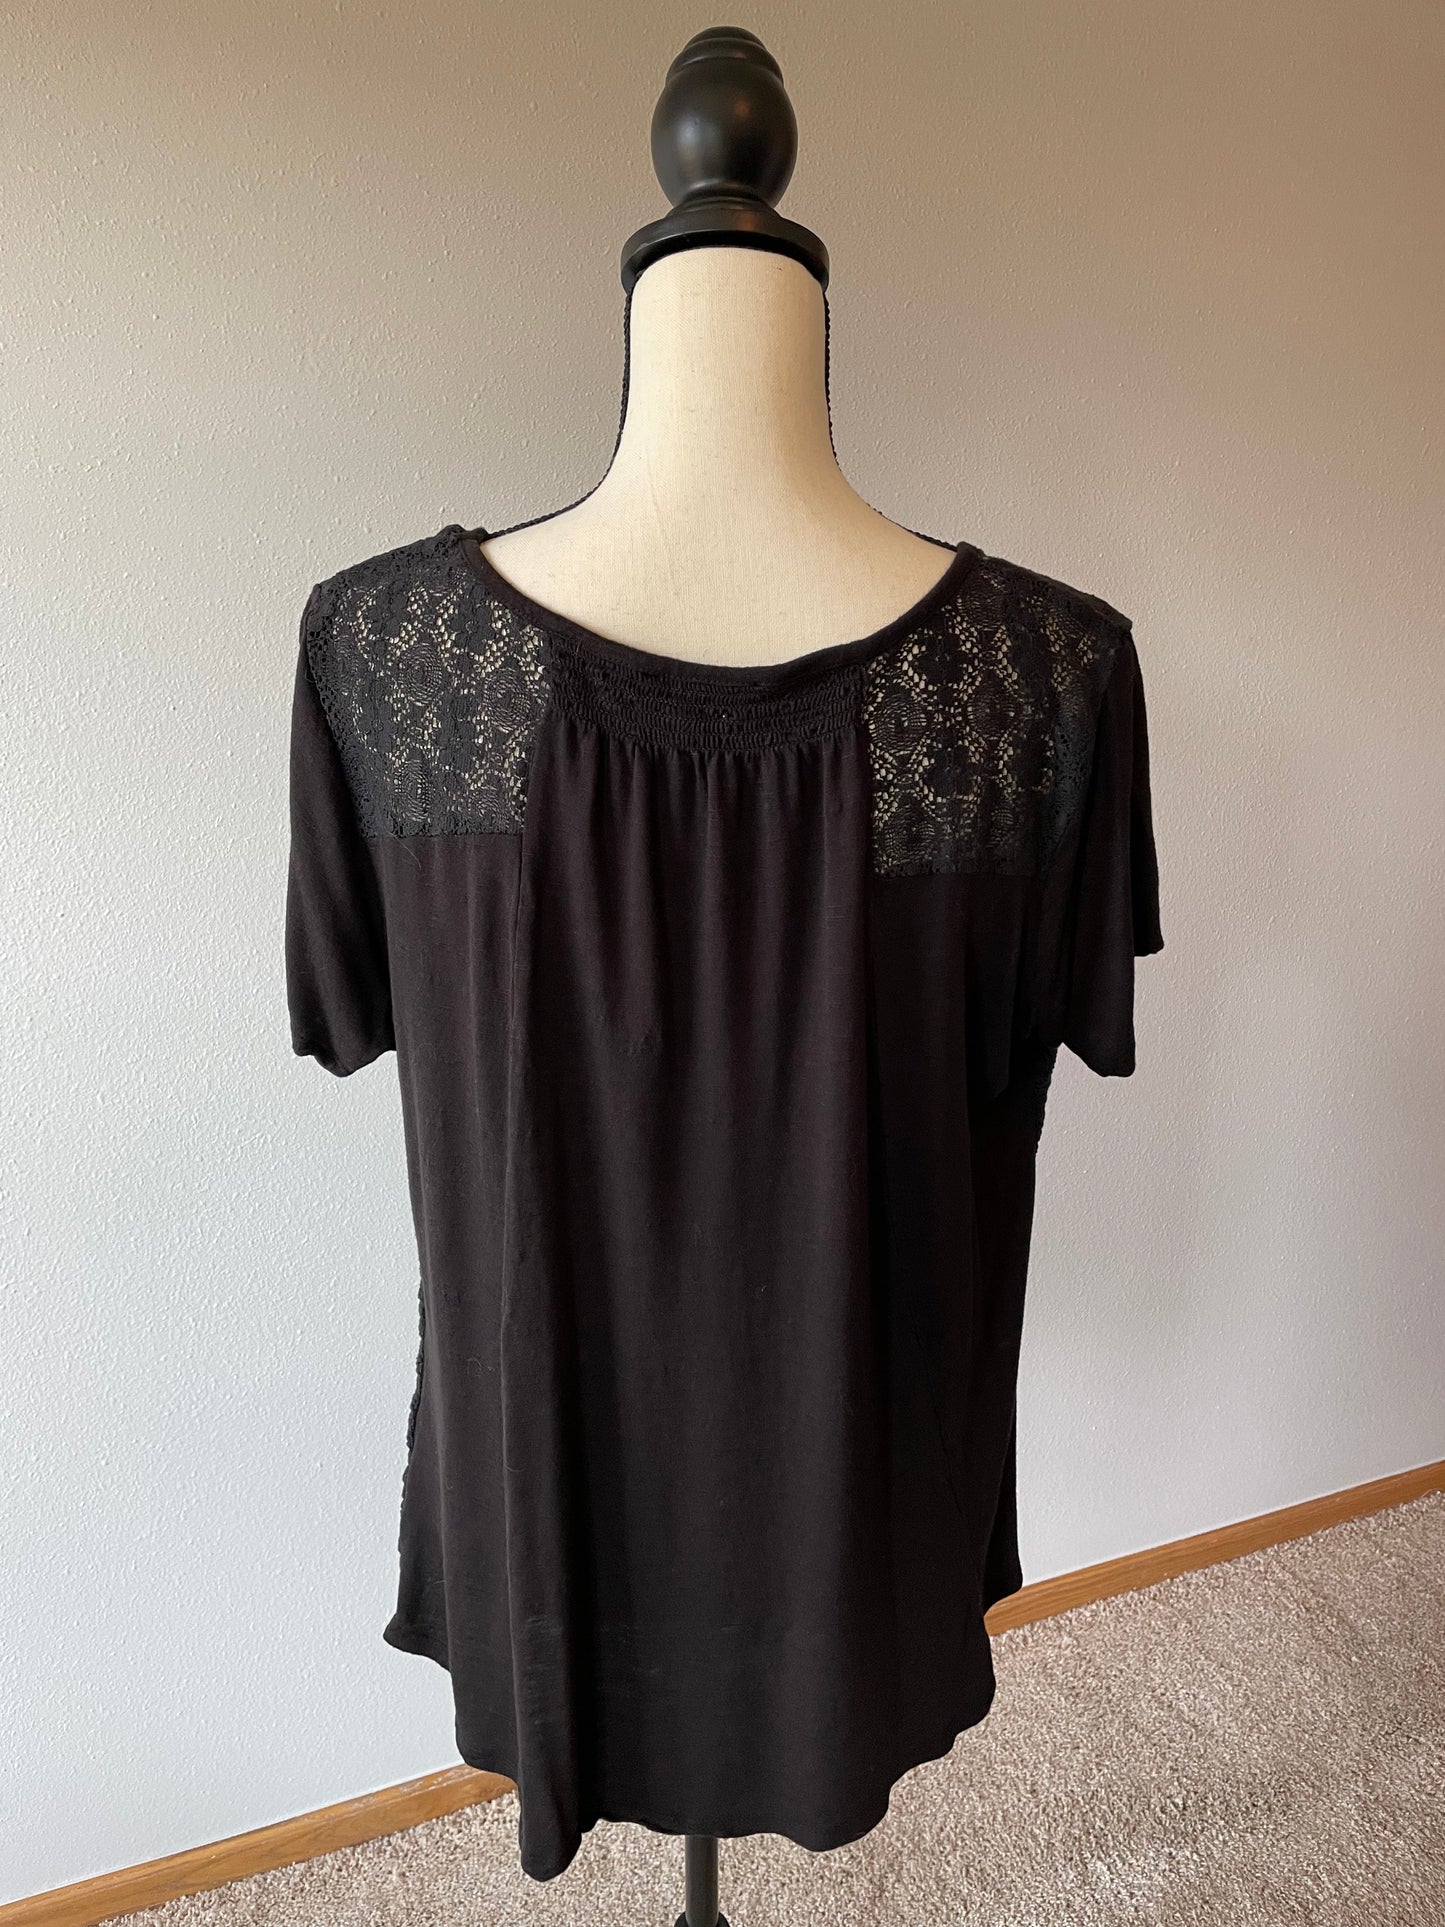 Ruff Hewn Women's Black Shirt (XL)